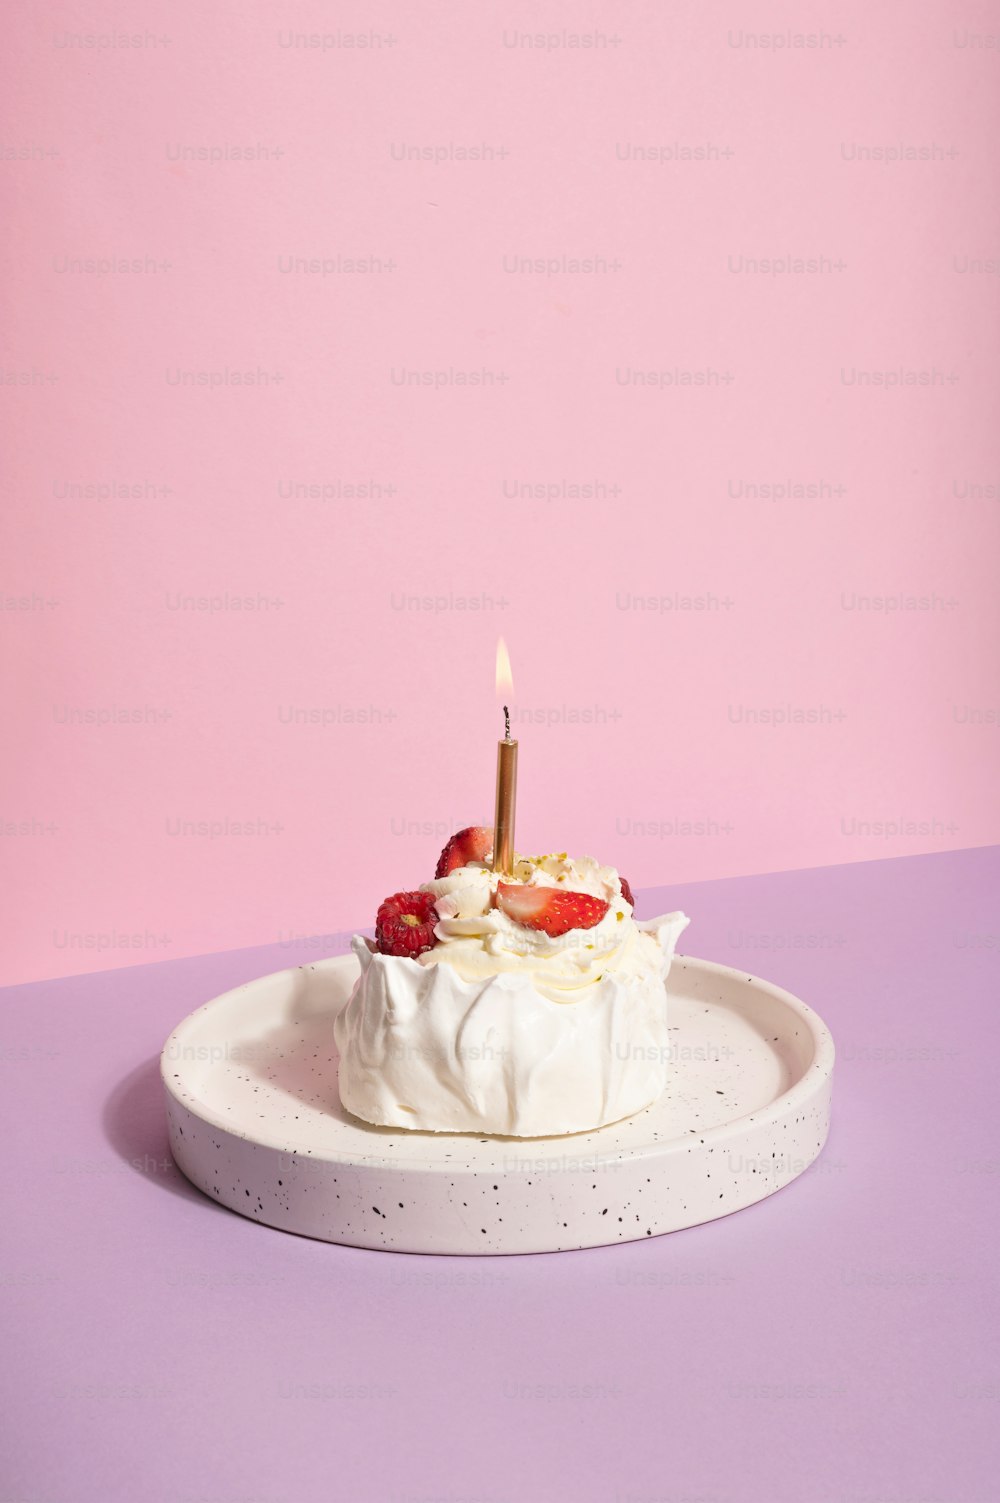 그 위에 촛불이 달린 작은 케이크